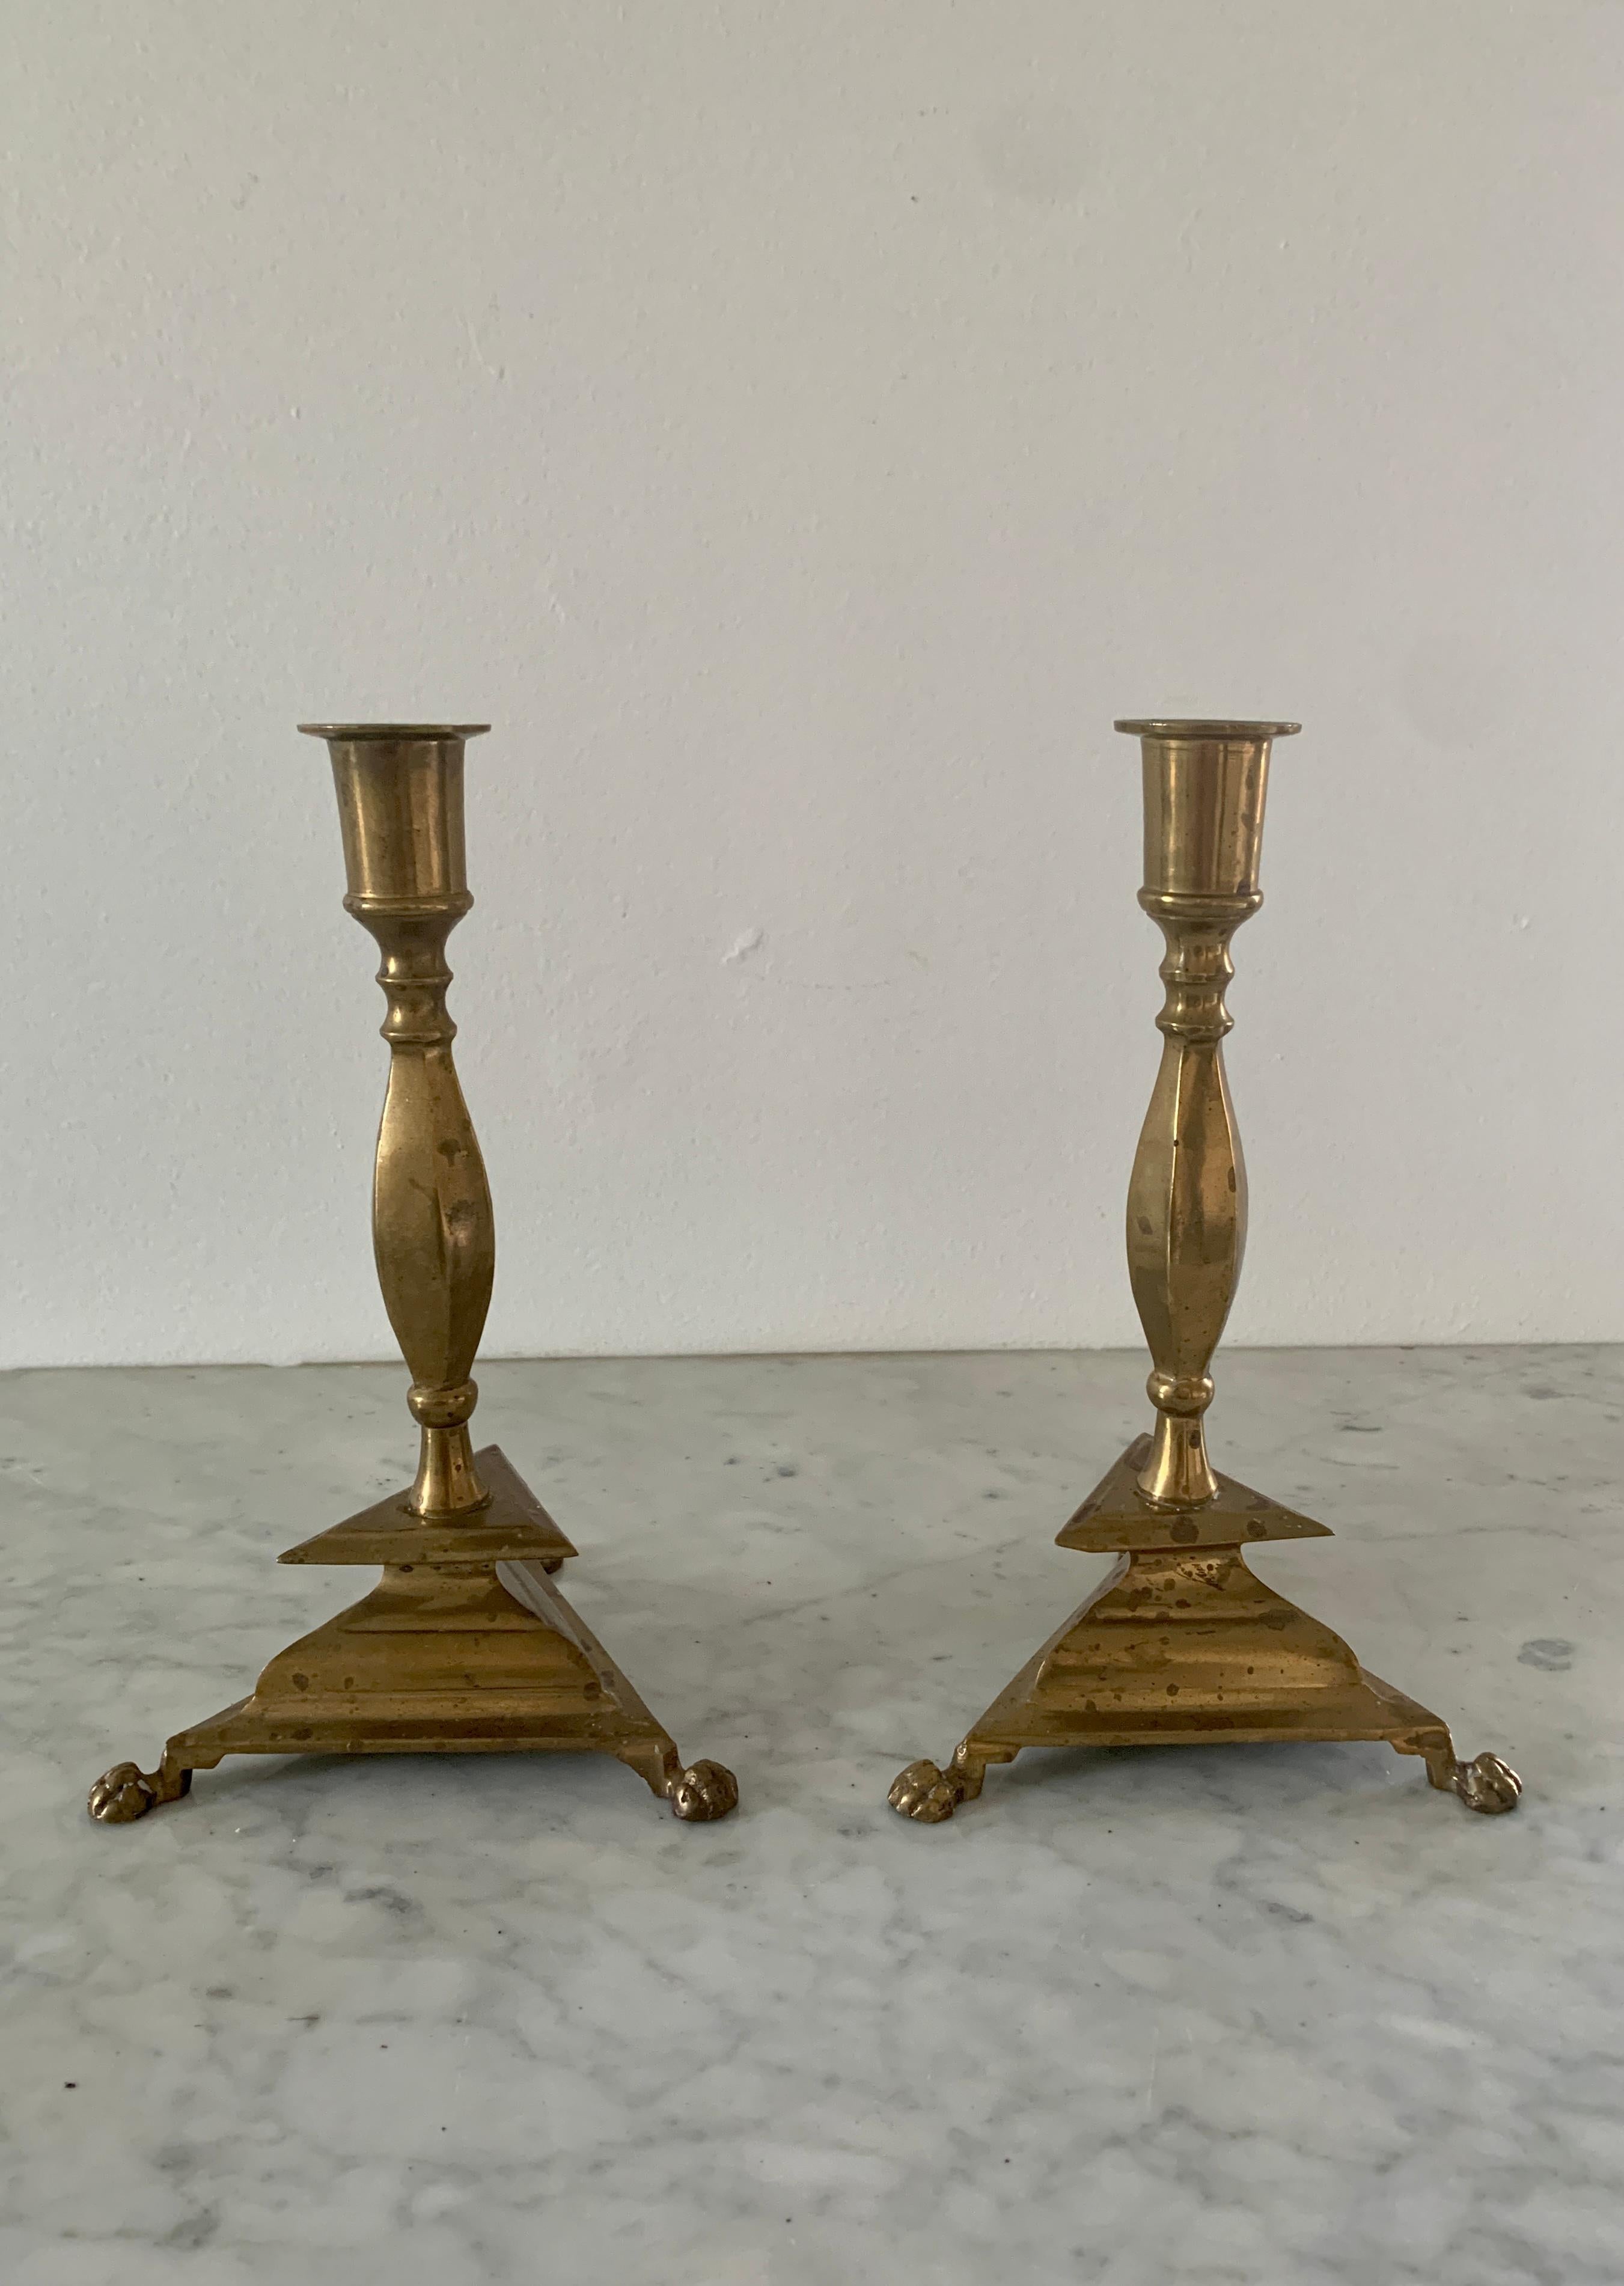 Ein wunderschönes Paar Kerzenhalter aus Messing im neoklassischen Stil mit Tatzenfüßen

Circa Mitte des 20. Jahrhunderts

Maße: 5,25 